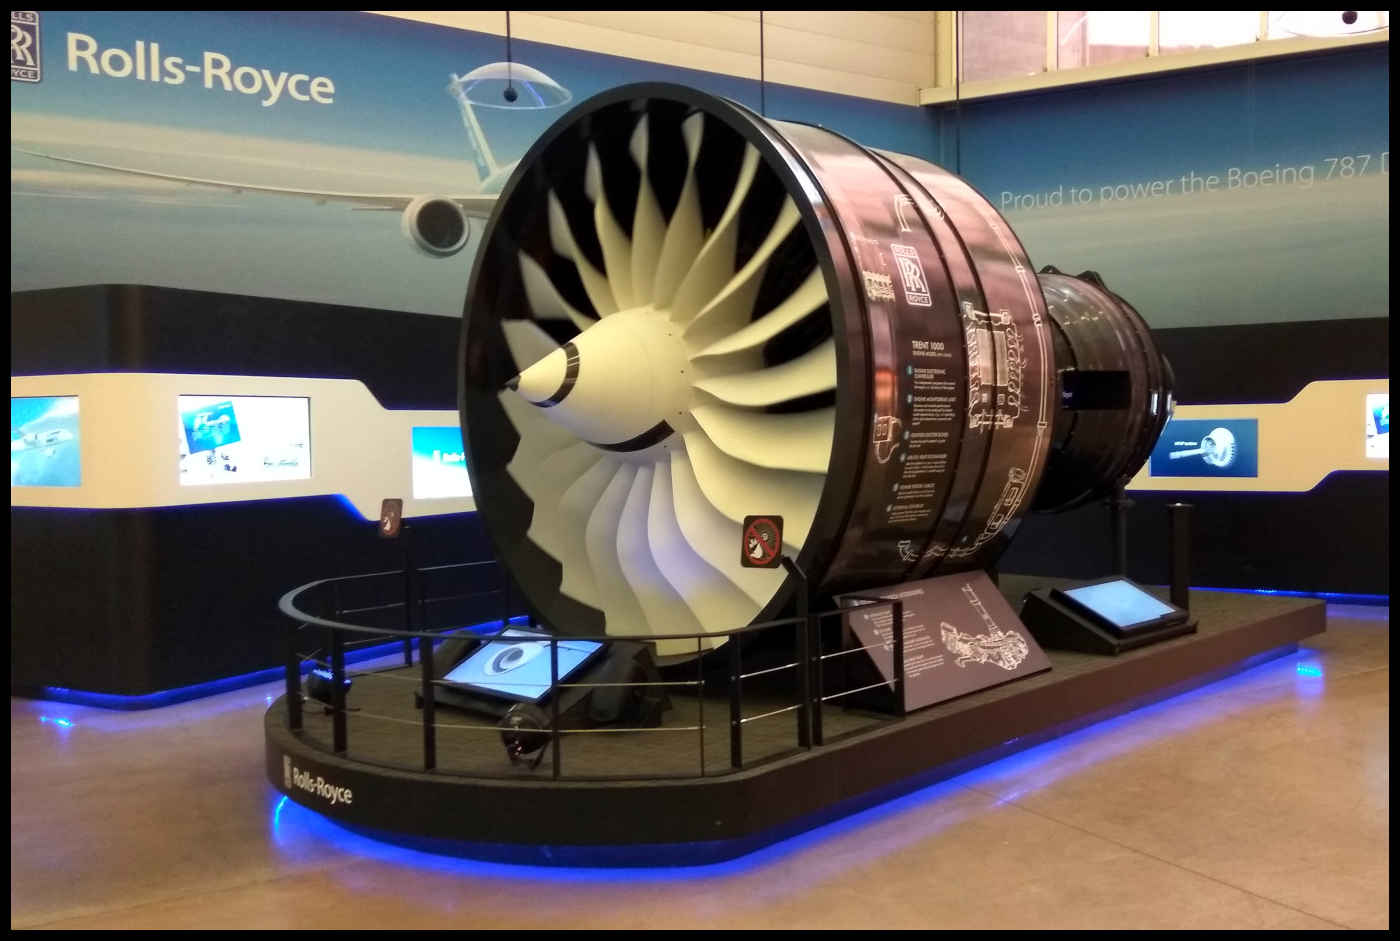 Motor Rolls-Royce - Boeing